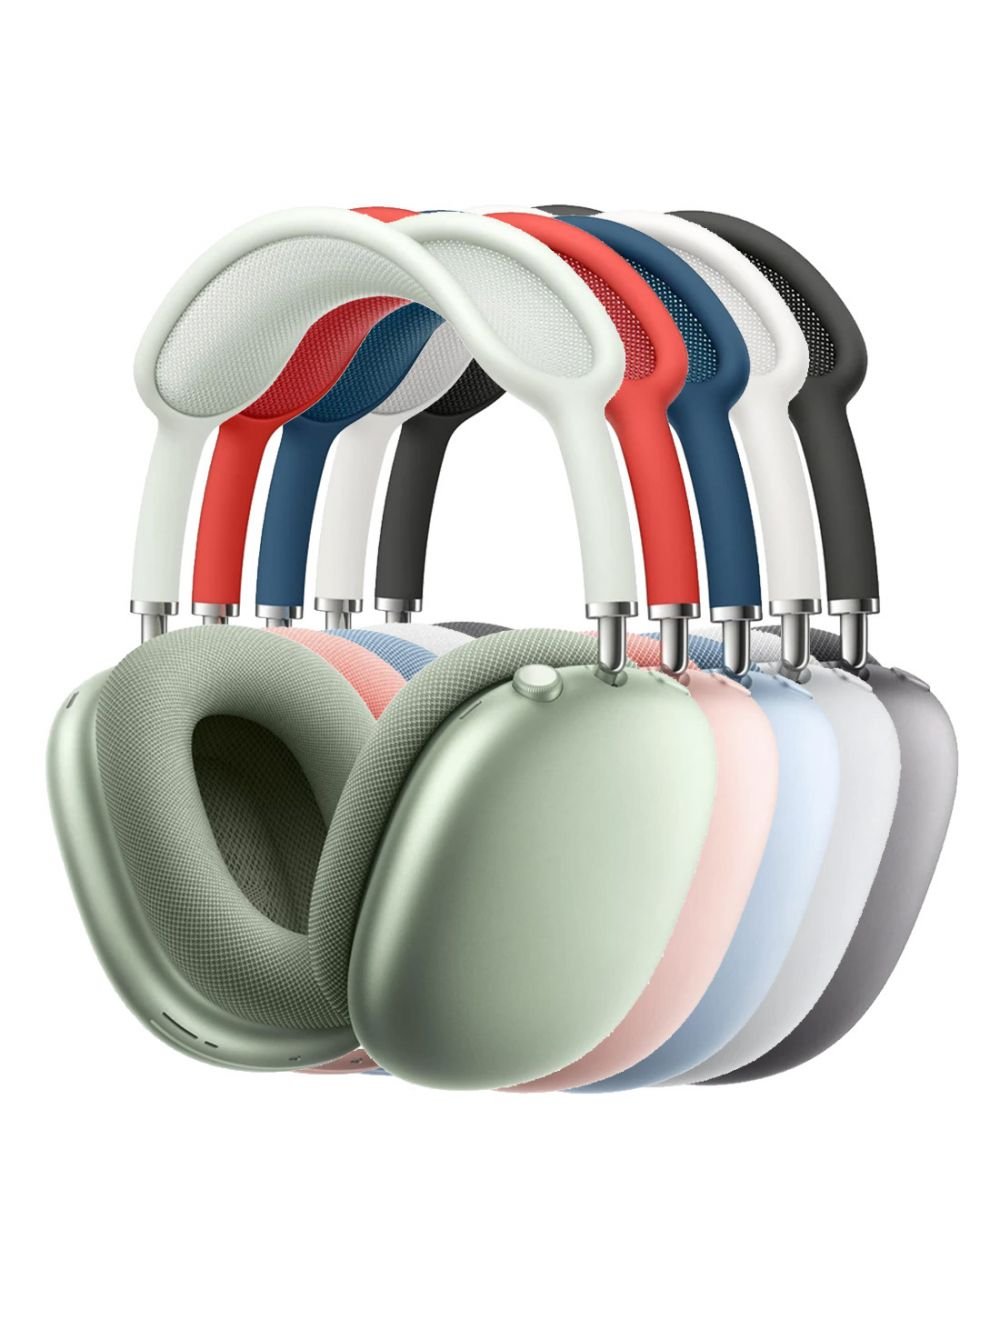 Tai Nghe Headphone Bluetooth LANITH Air Max P9 - Tai Nghe Chụp Tai Không Dây Dễ Thương Chống Ồn - Hỗ Trợ Các Thao Tác Điều Chỉnh Chế Độ - Dễ Dàng Sử Dụng Với Tất Cả Các Hệ Điều Hành - Hàng Nhập Khẩu - HP0000P9